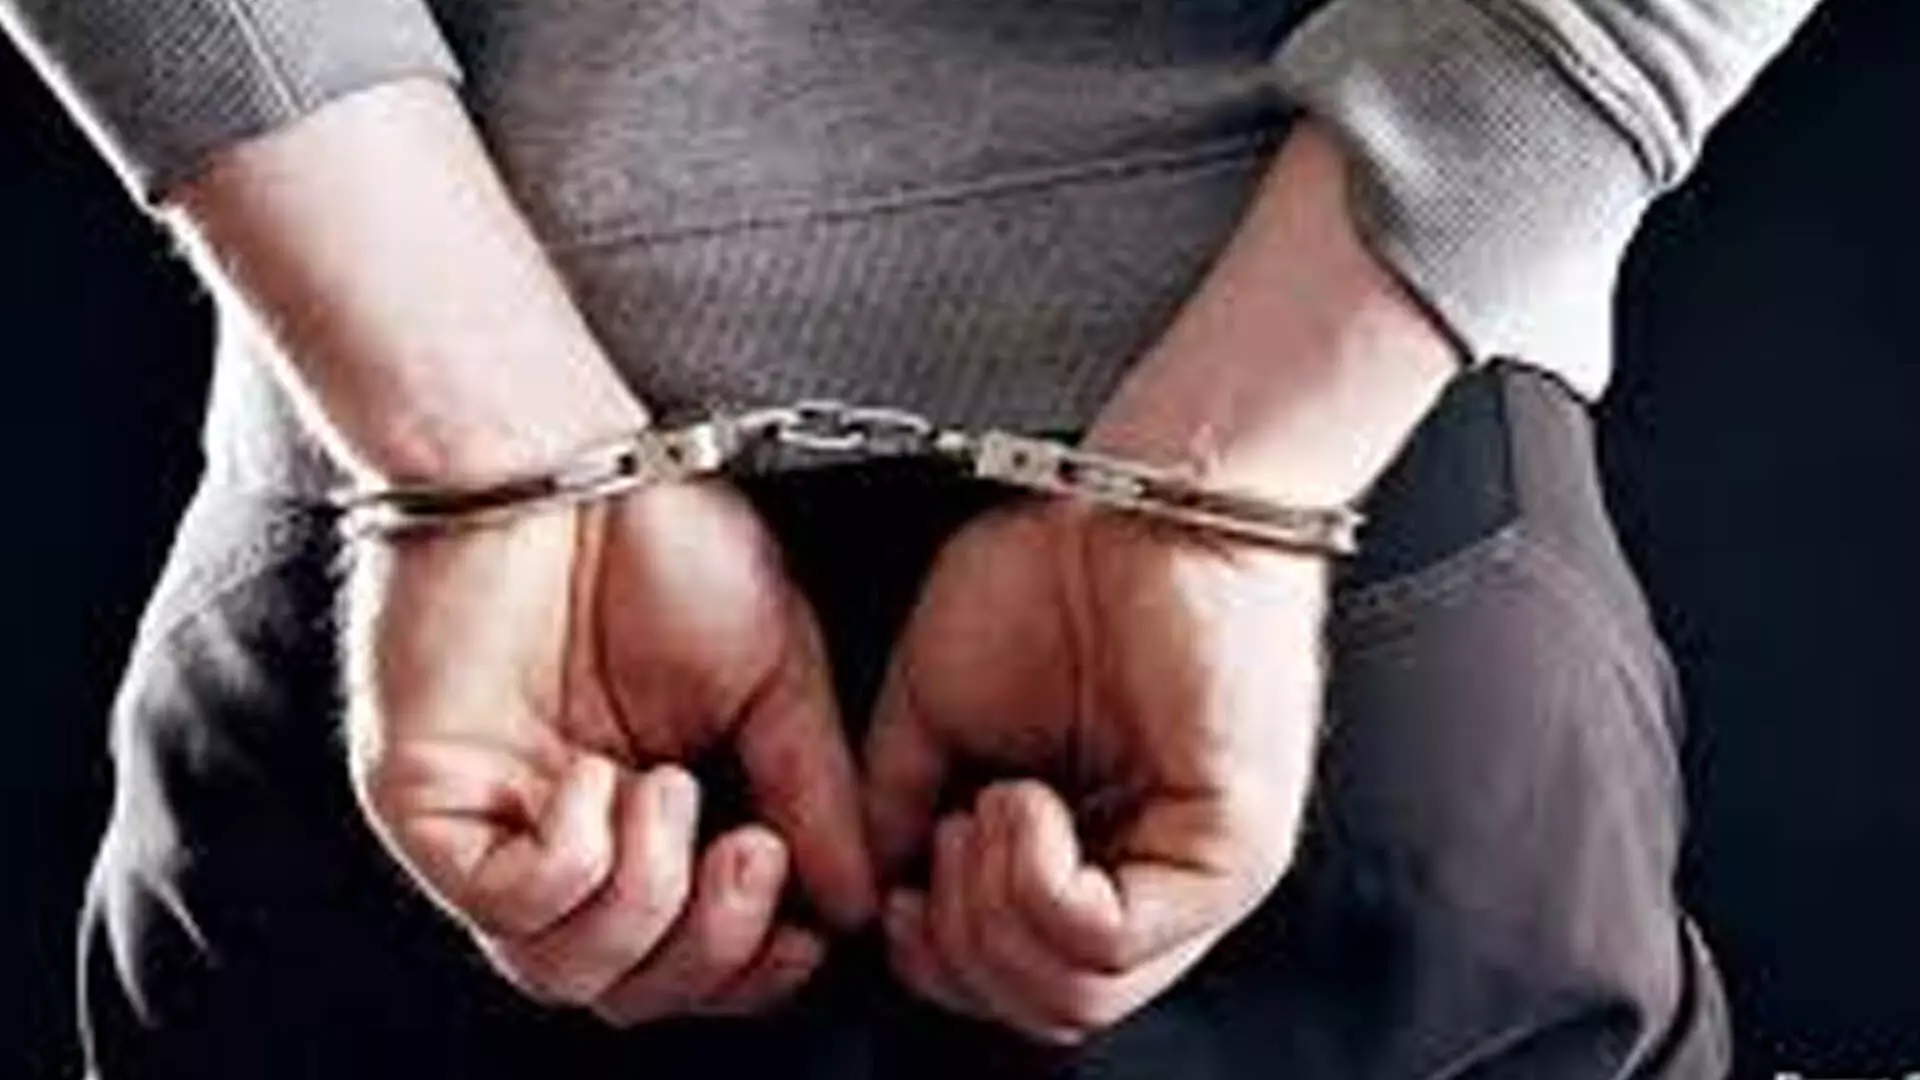 चेंगलपेट में पुलिस ने चार लोगो को गिरफ्तार किया, अपहृत महिला को बचाया